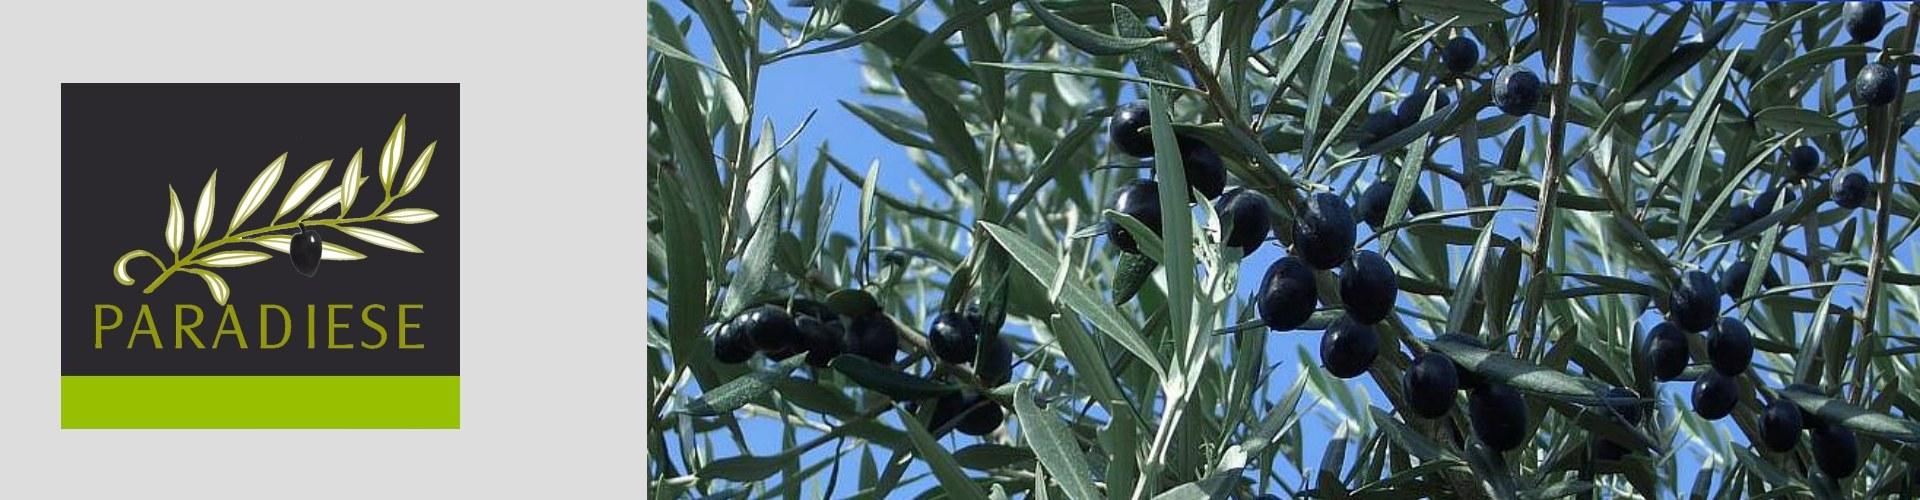 Extra natives Olivenöl von der iberischen Halbinsel ..